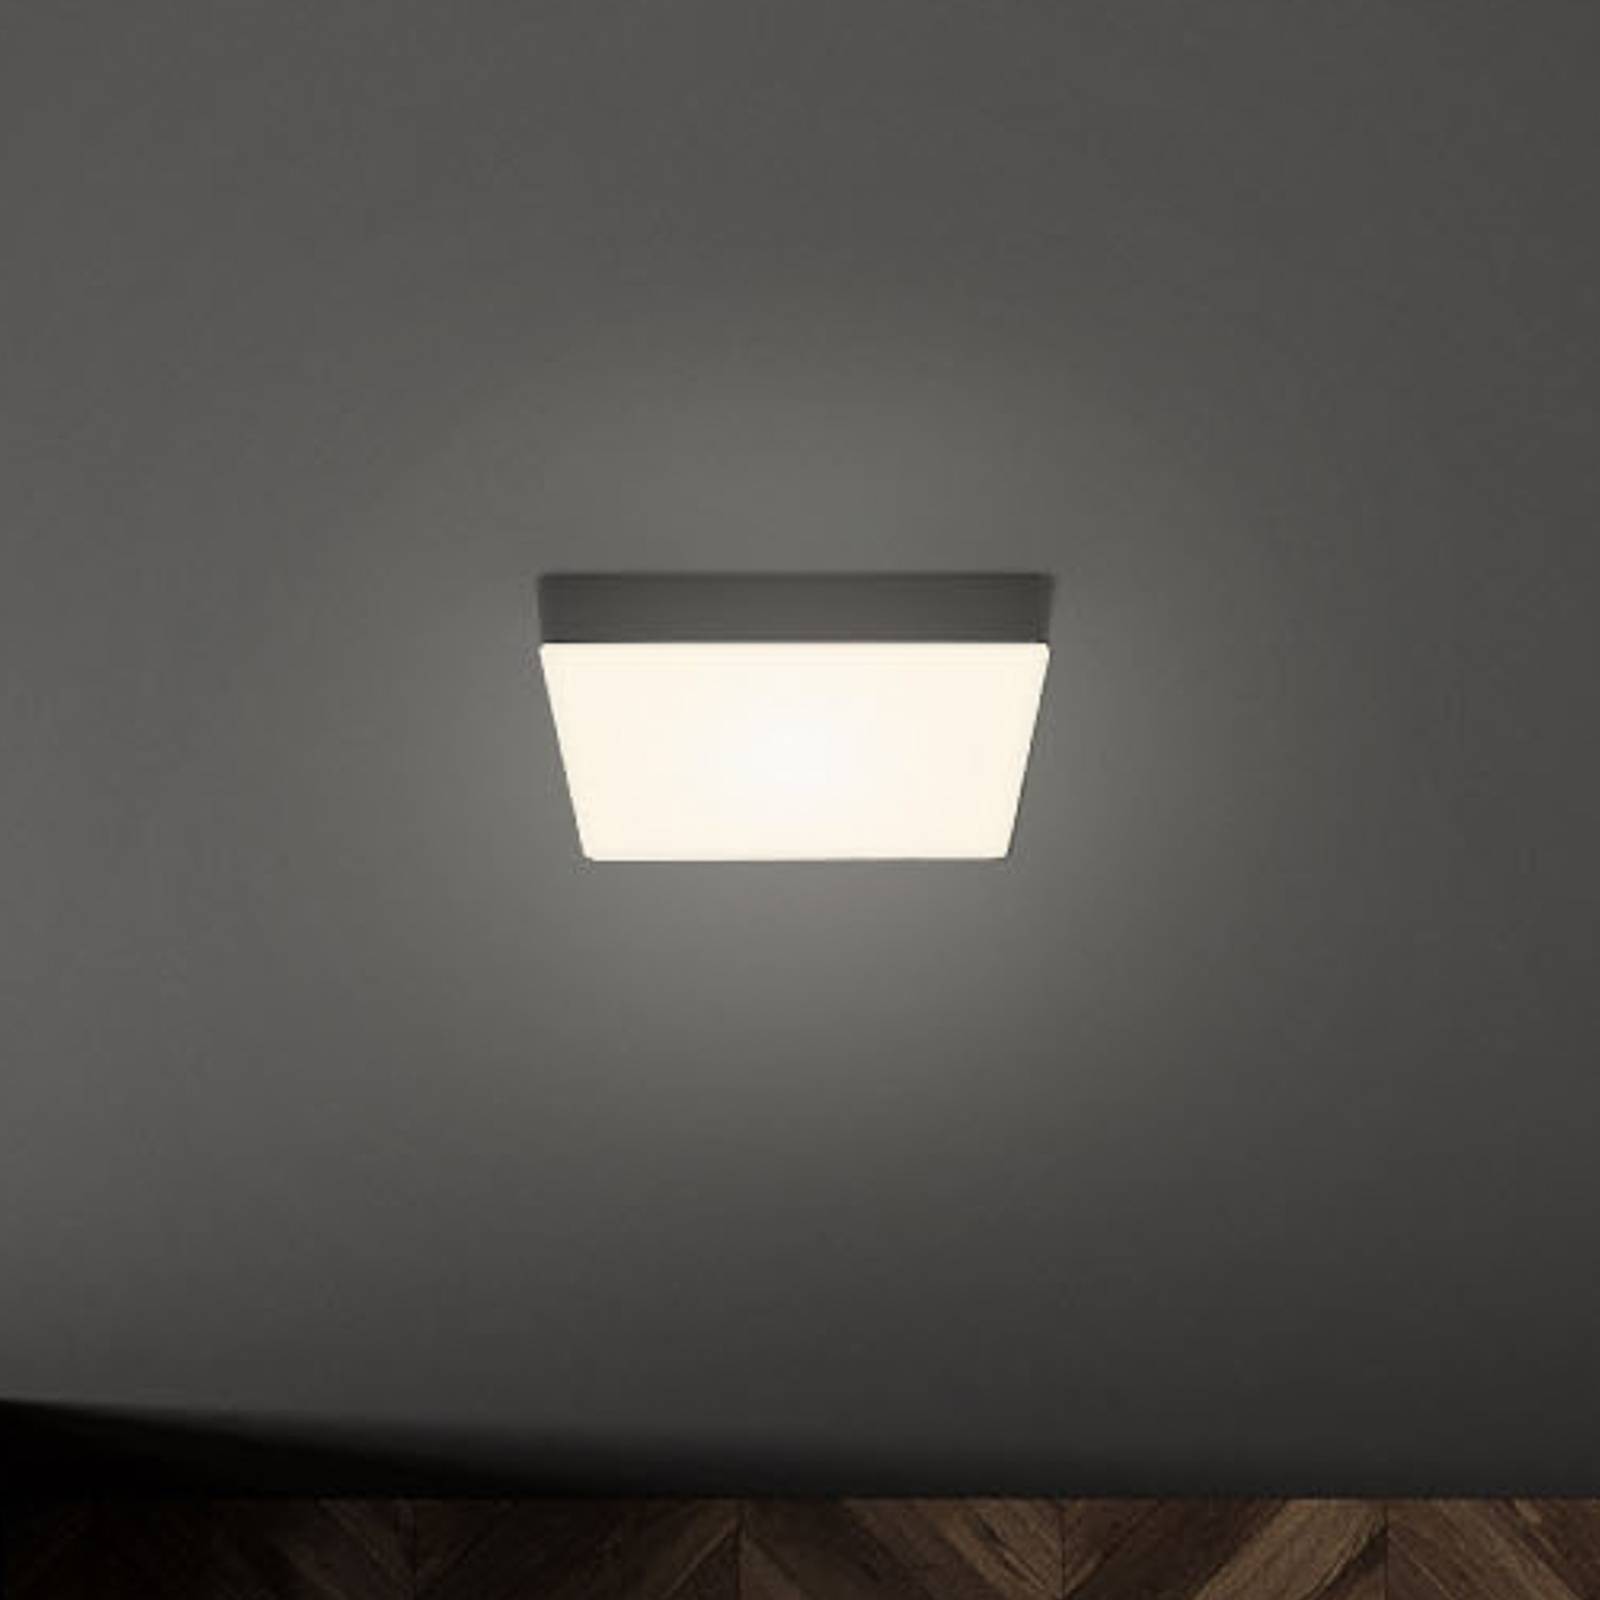 LED lámpa Flame, 15,7 x 15,7 cm, fek. színű